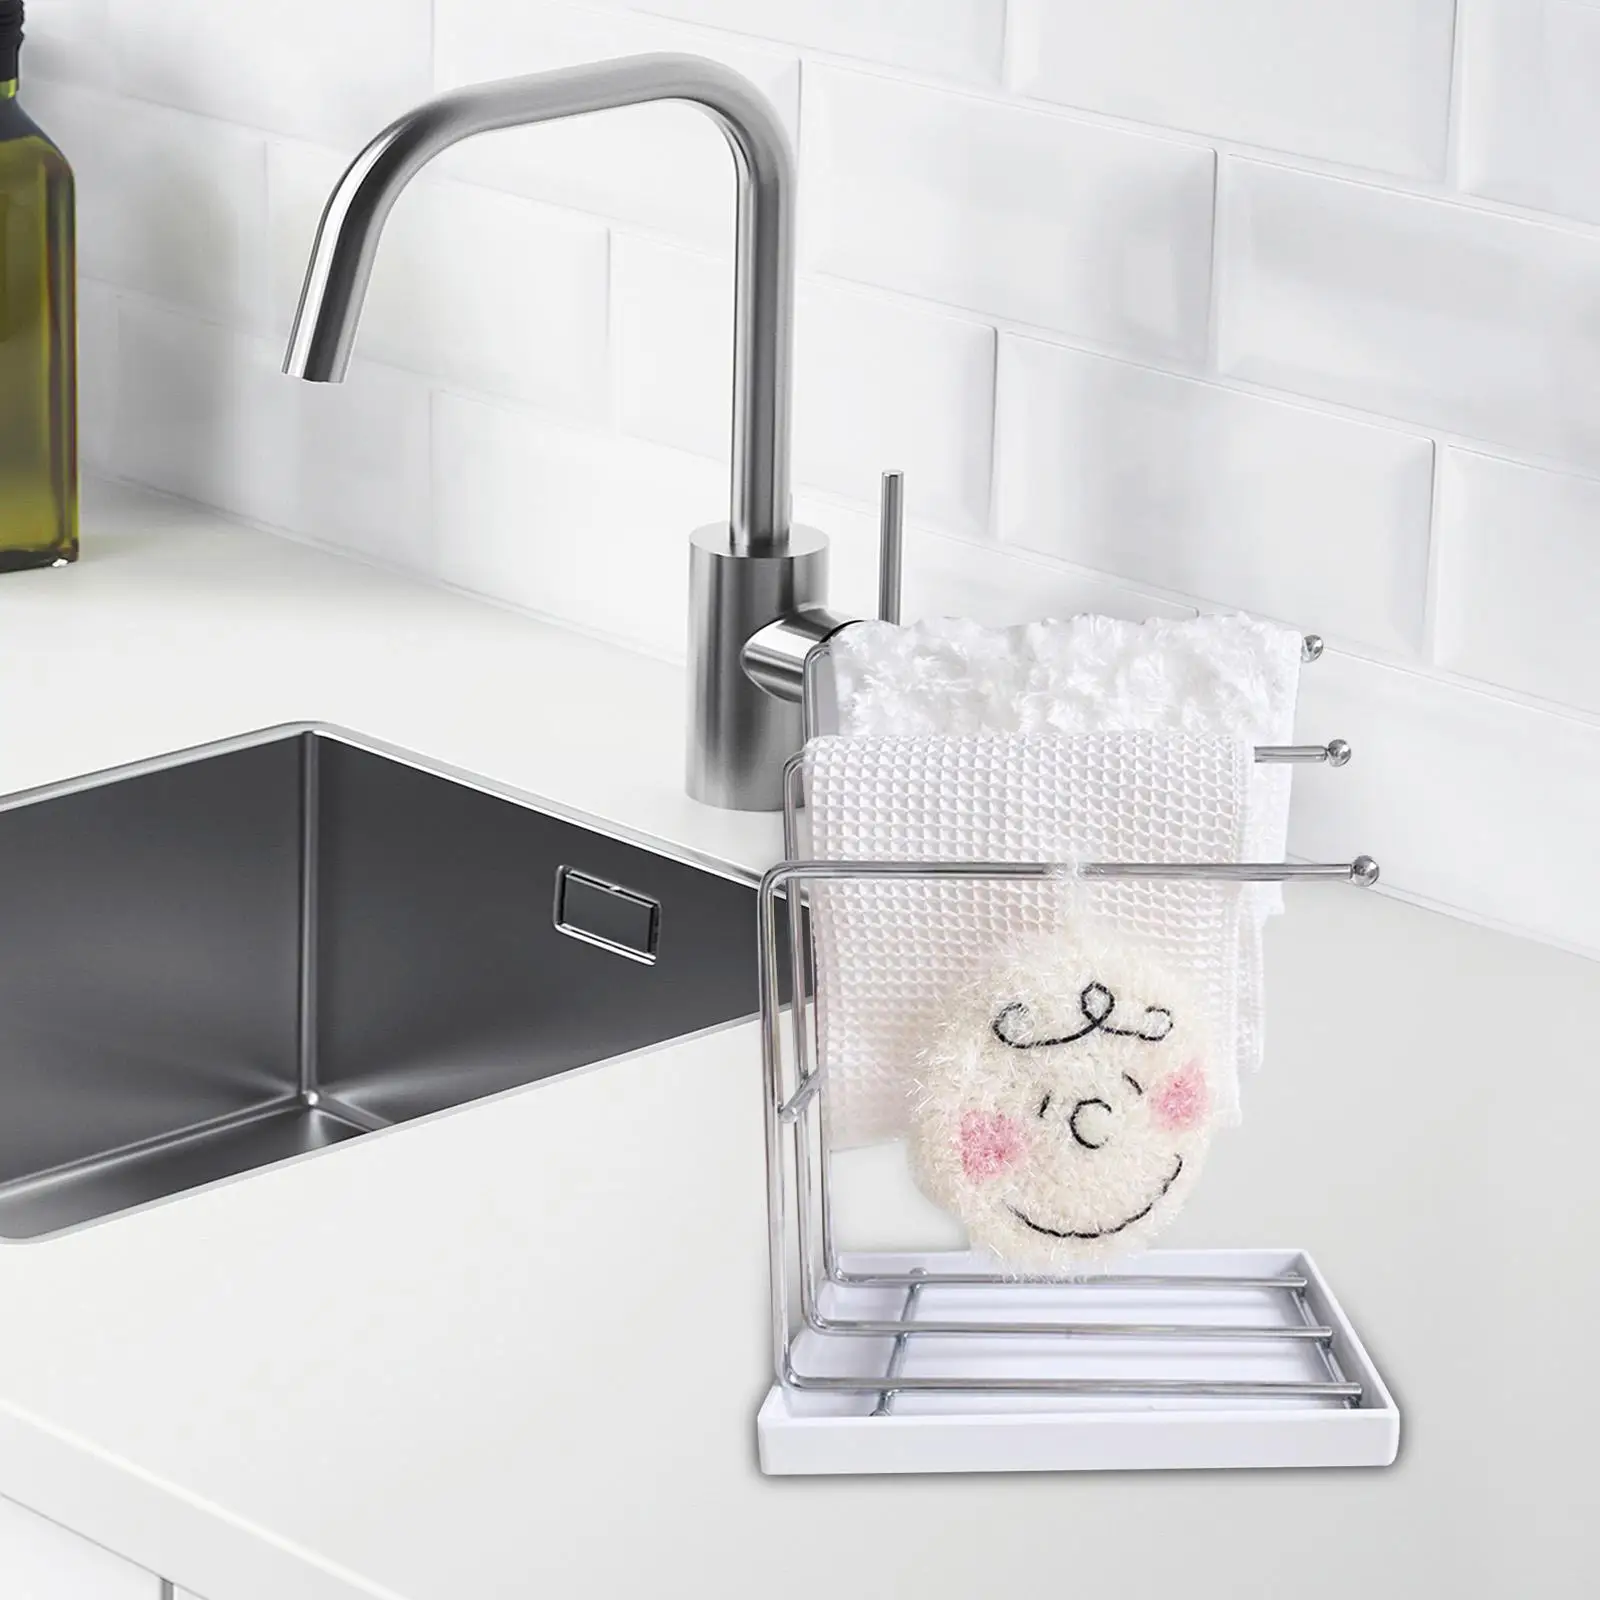 Sink Organizer Dishcloth Shelf Stainless Steel Brush Soap Holder Kitchen Sponge Holder for Bathroom Sink Countertop